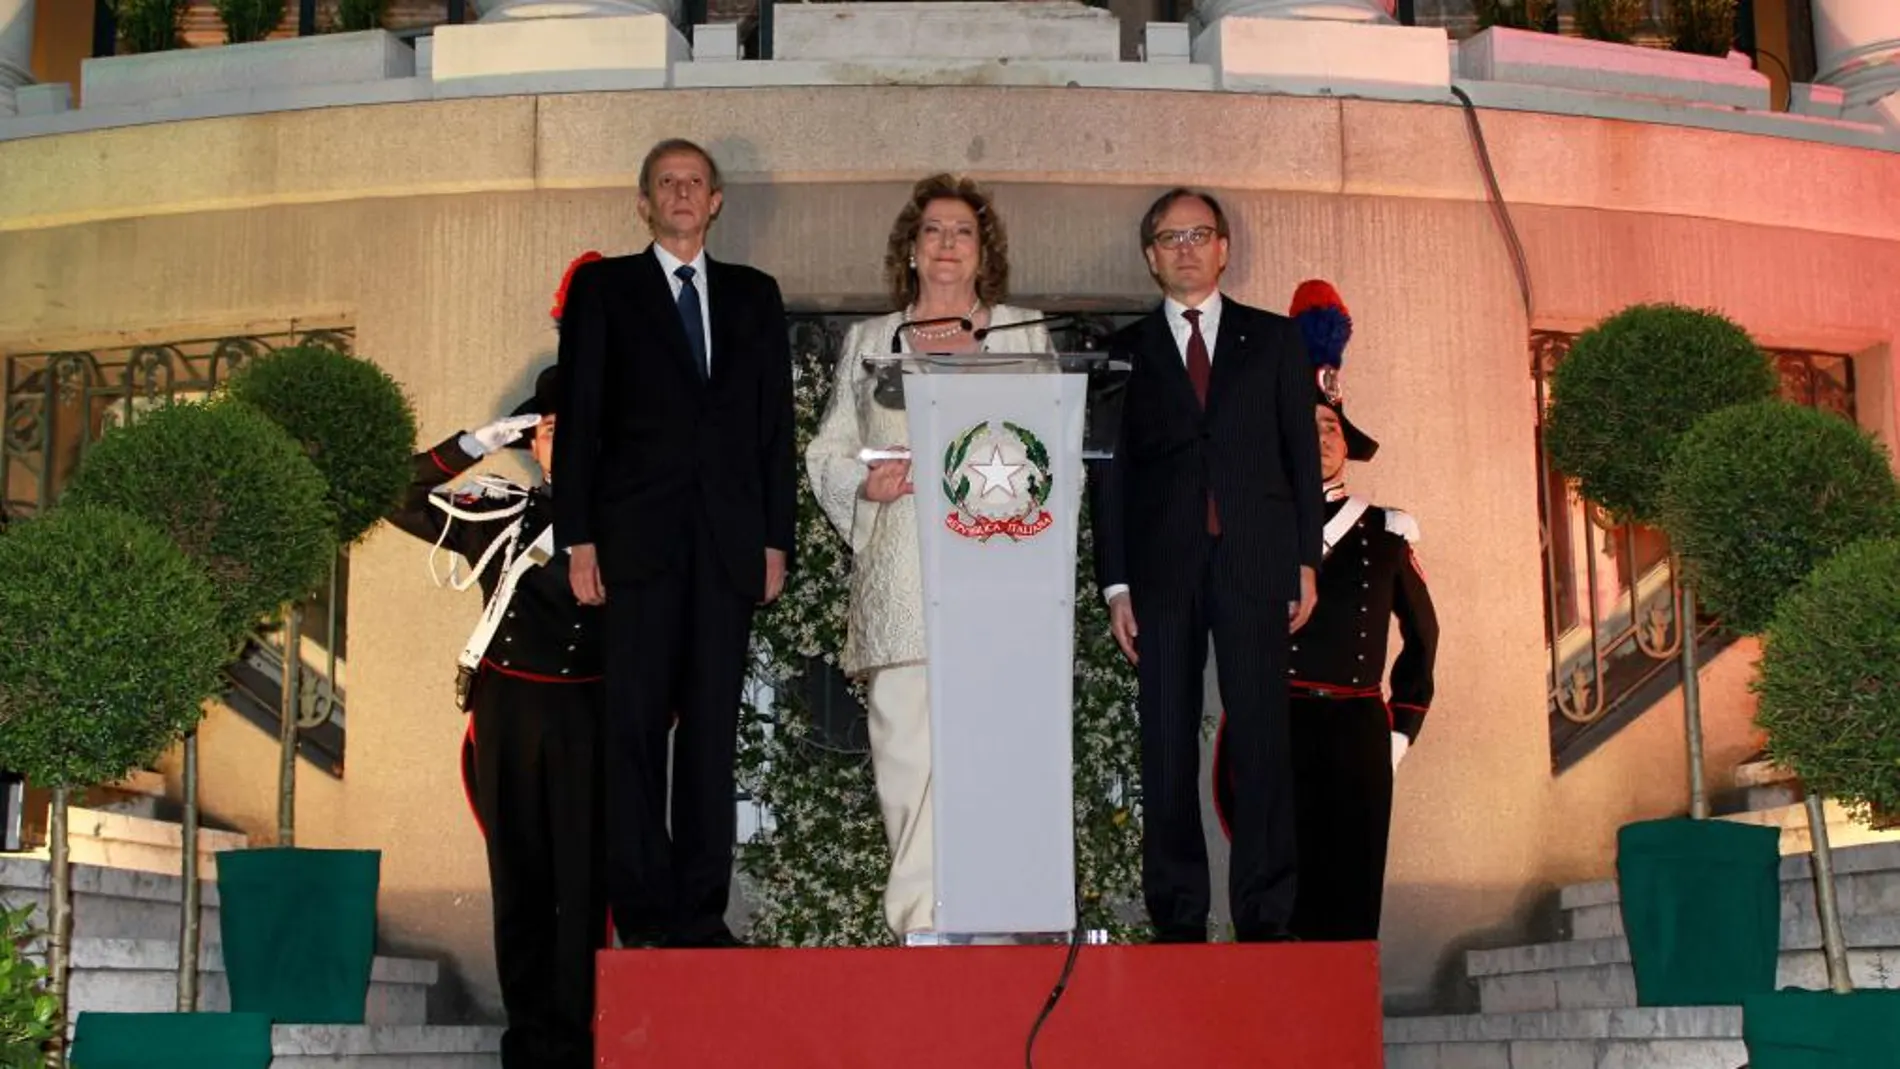 Instante en el que el Alcalde de Turín don Piero Fassino; la señora Presidenta de Expo 2015 SpA, doña Diana Bracco y el anfitrión italiano don Pietro Sebastiani, entonan los himnos nacionales de Italia y España.